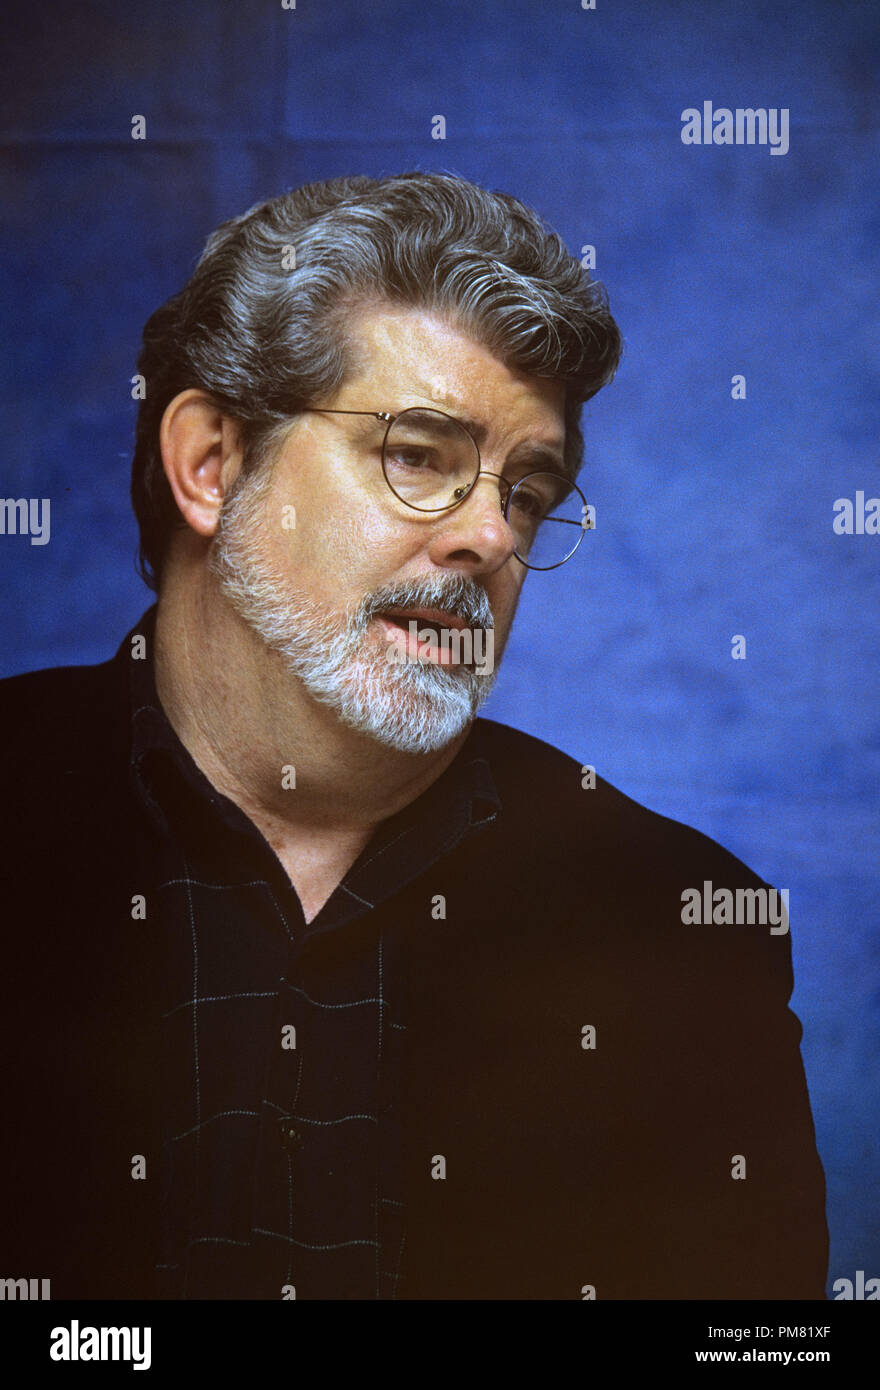 George Lucas, 1999. Reproduktion von amerikanischen Boulevardzeitungen ist absolut verboten. © GFS/Hollywood Archiv - Alle Rechte vorbehalten File Reference # 31315 114 Stockfoto